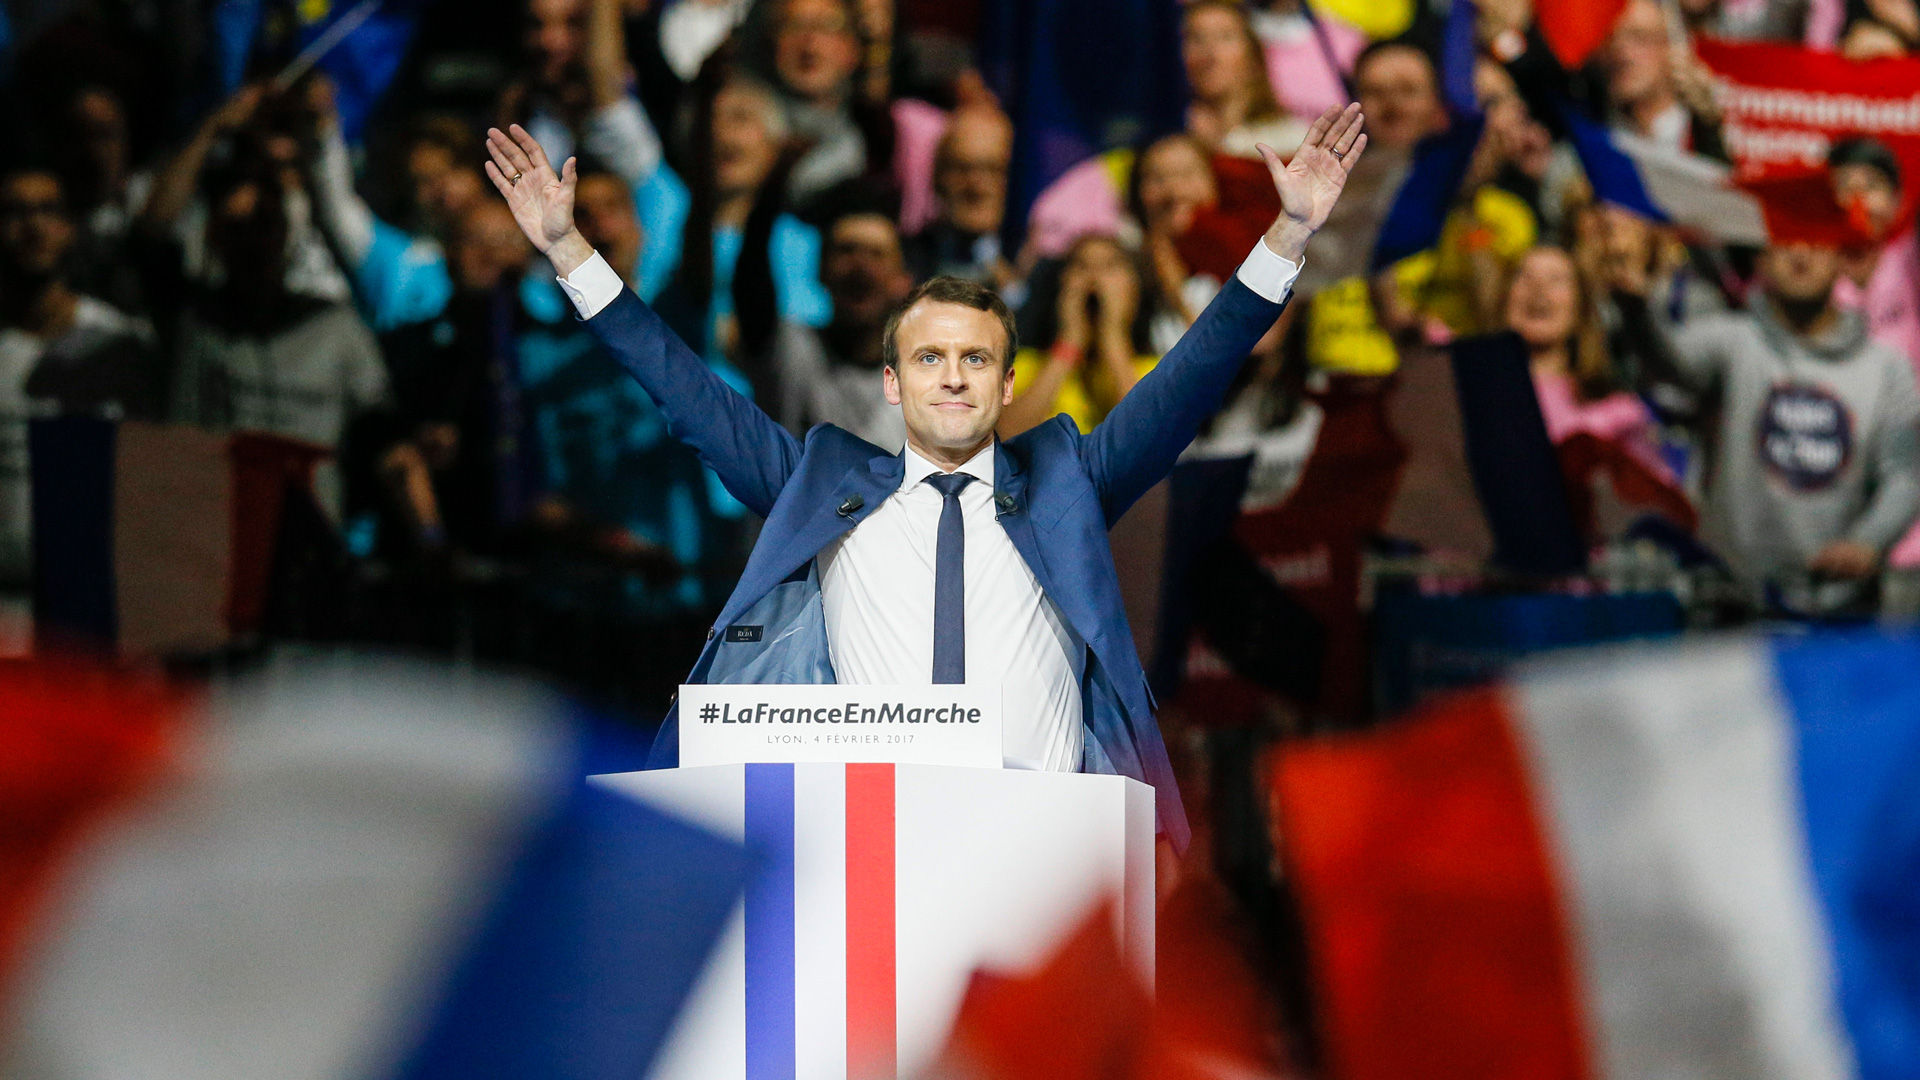 ¿Quienes son Emmanuel Macron y Marine Le Pen? 2